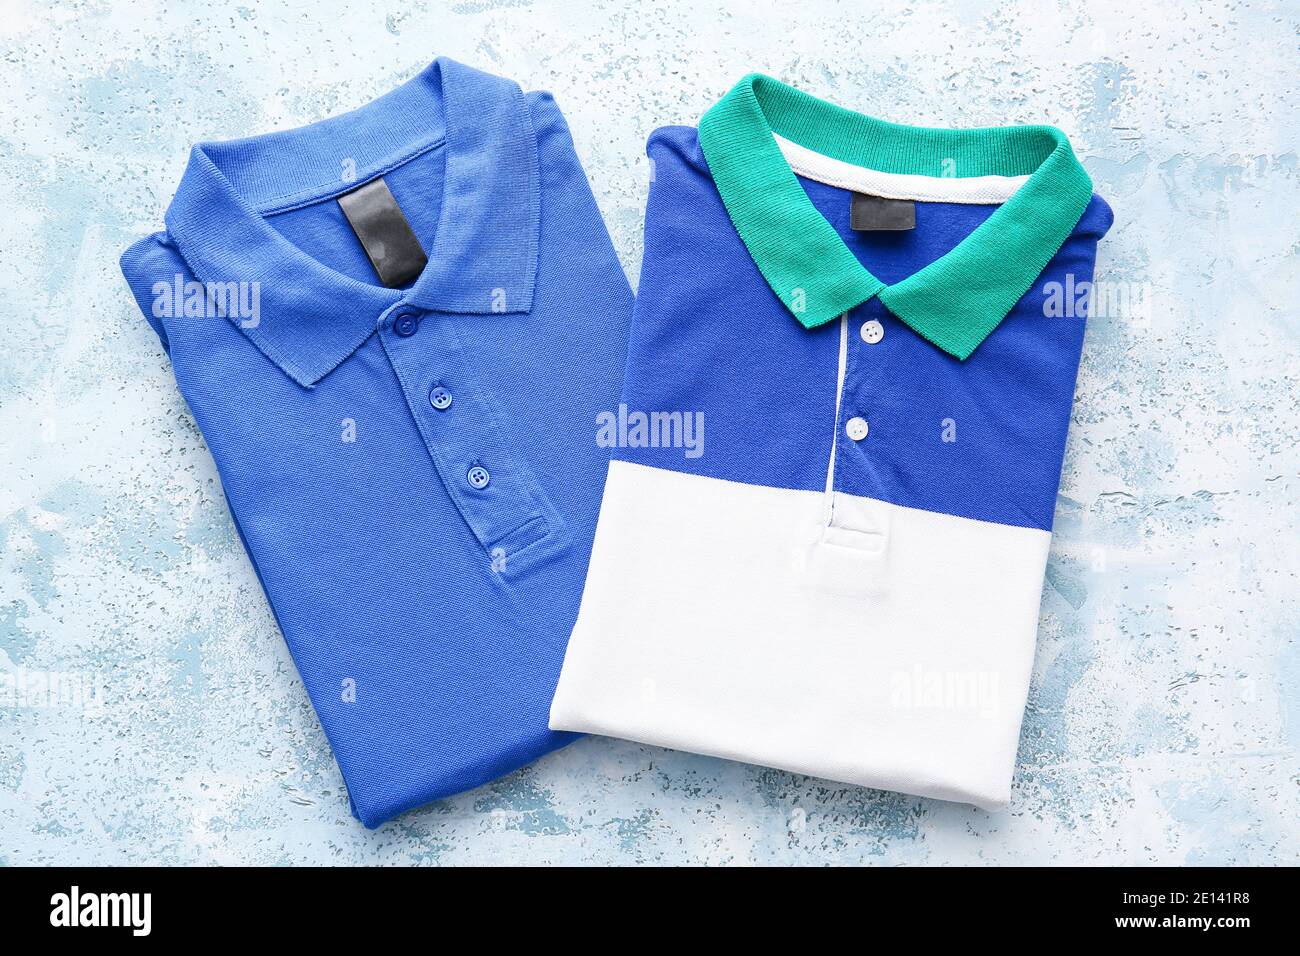 Folded polo shirts on light background Stock Photo - Alamy